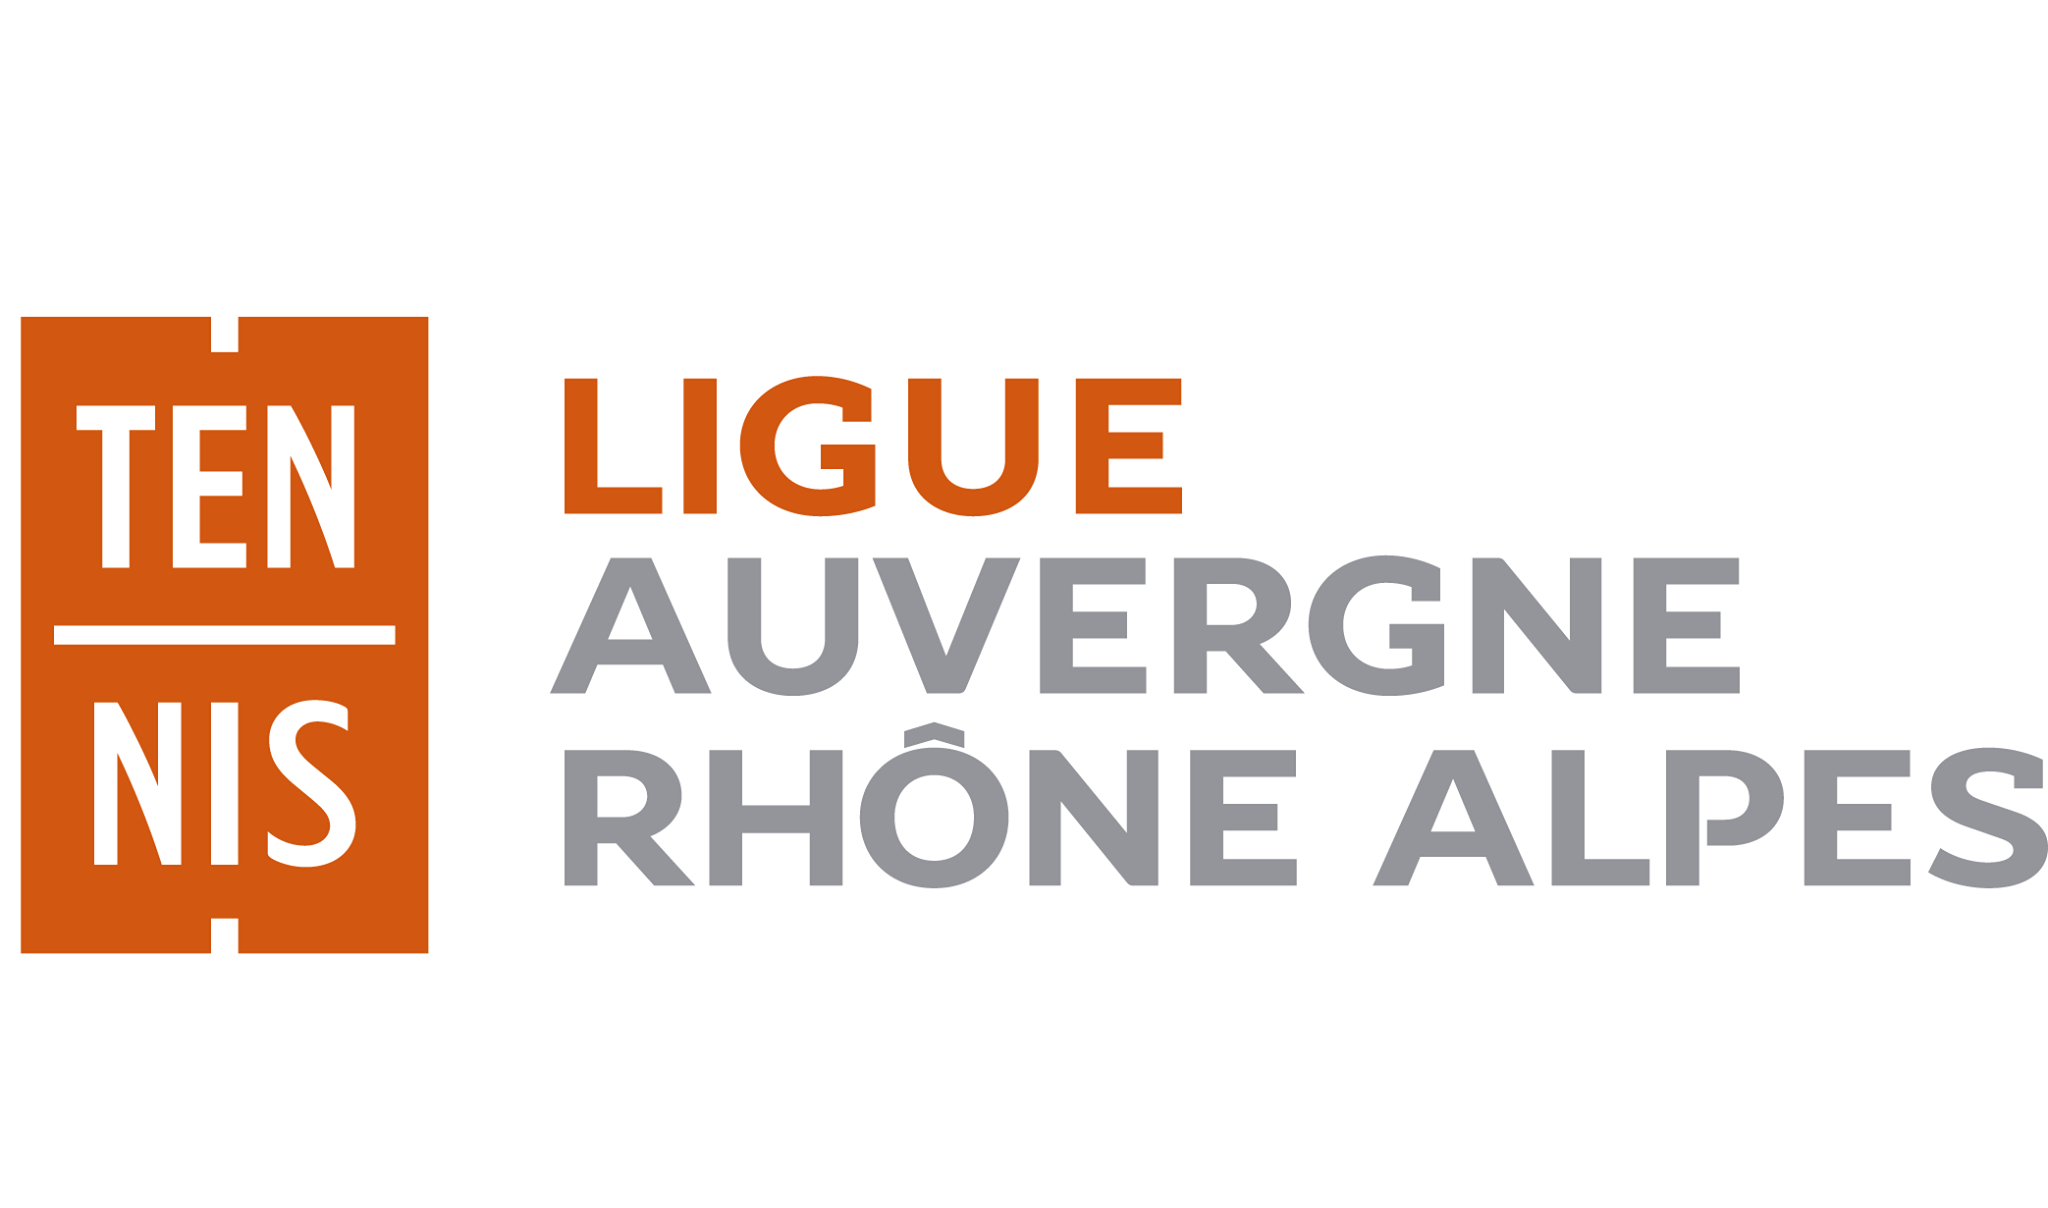 De competitie van Auvergne-Rhône-Alpes werft aan!